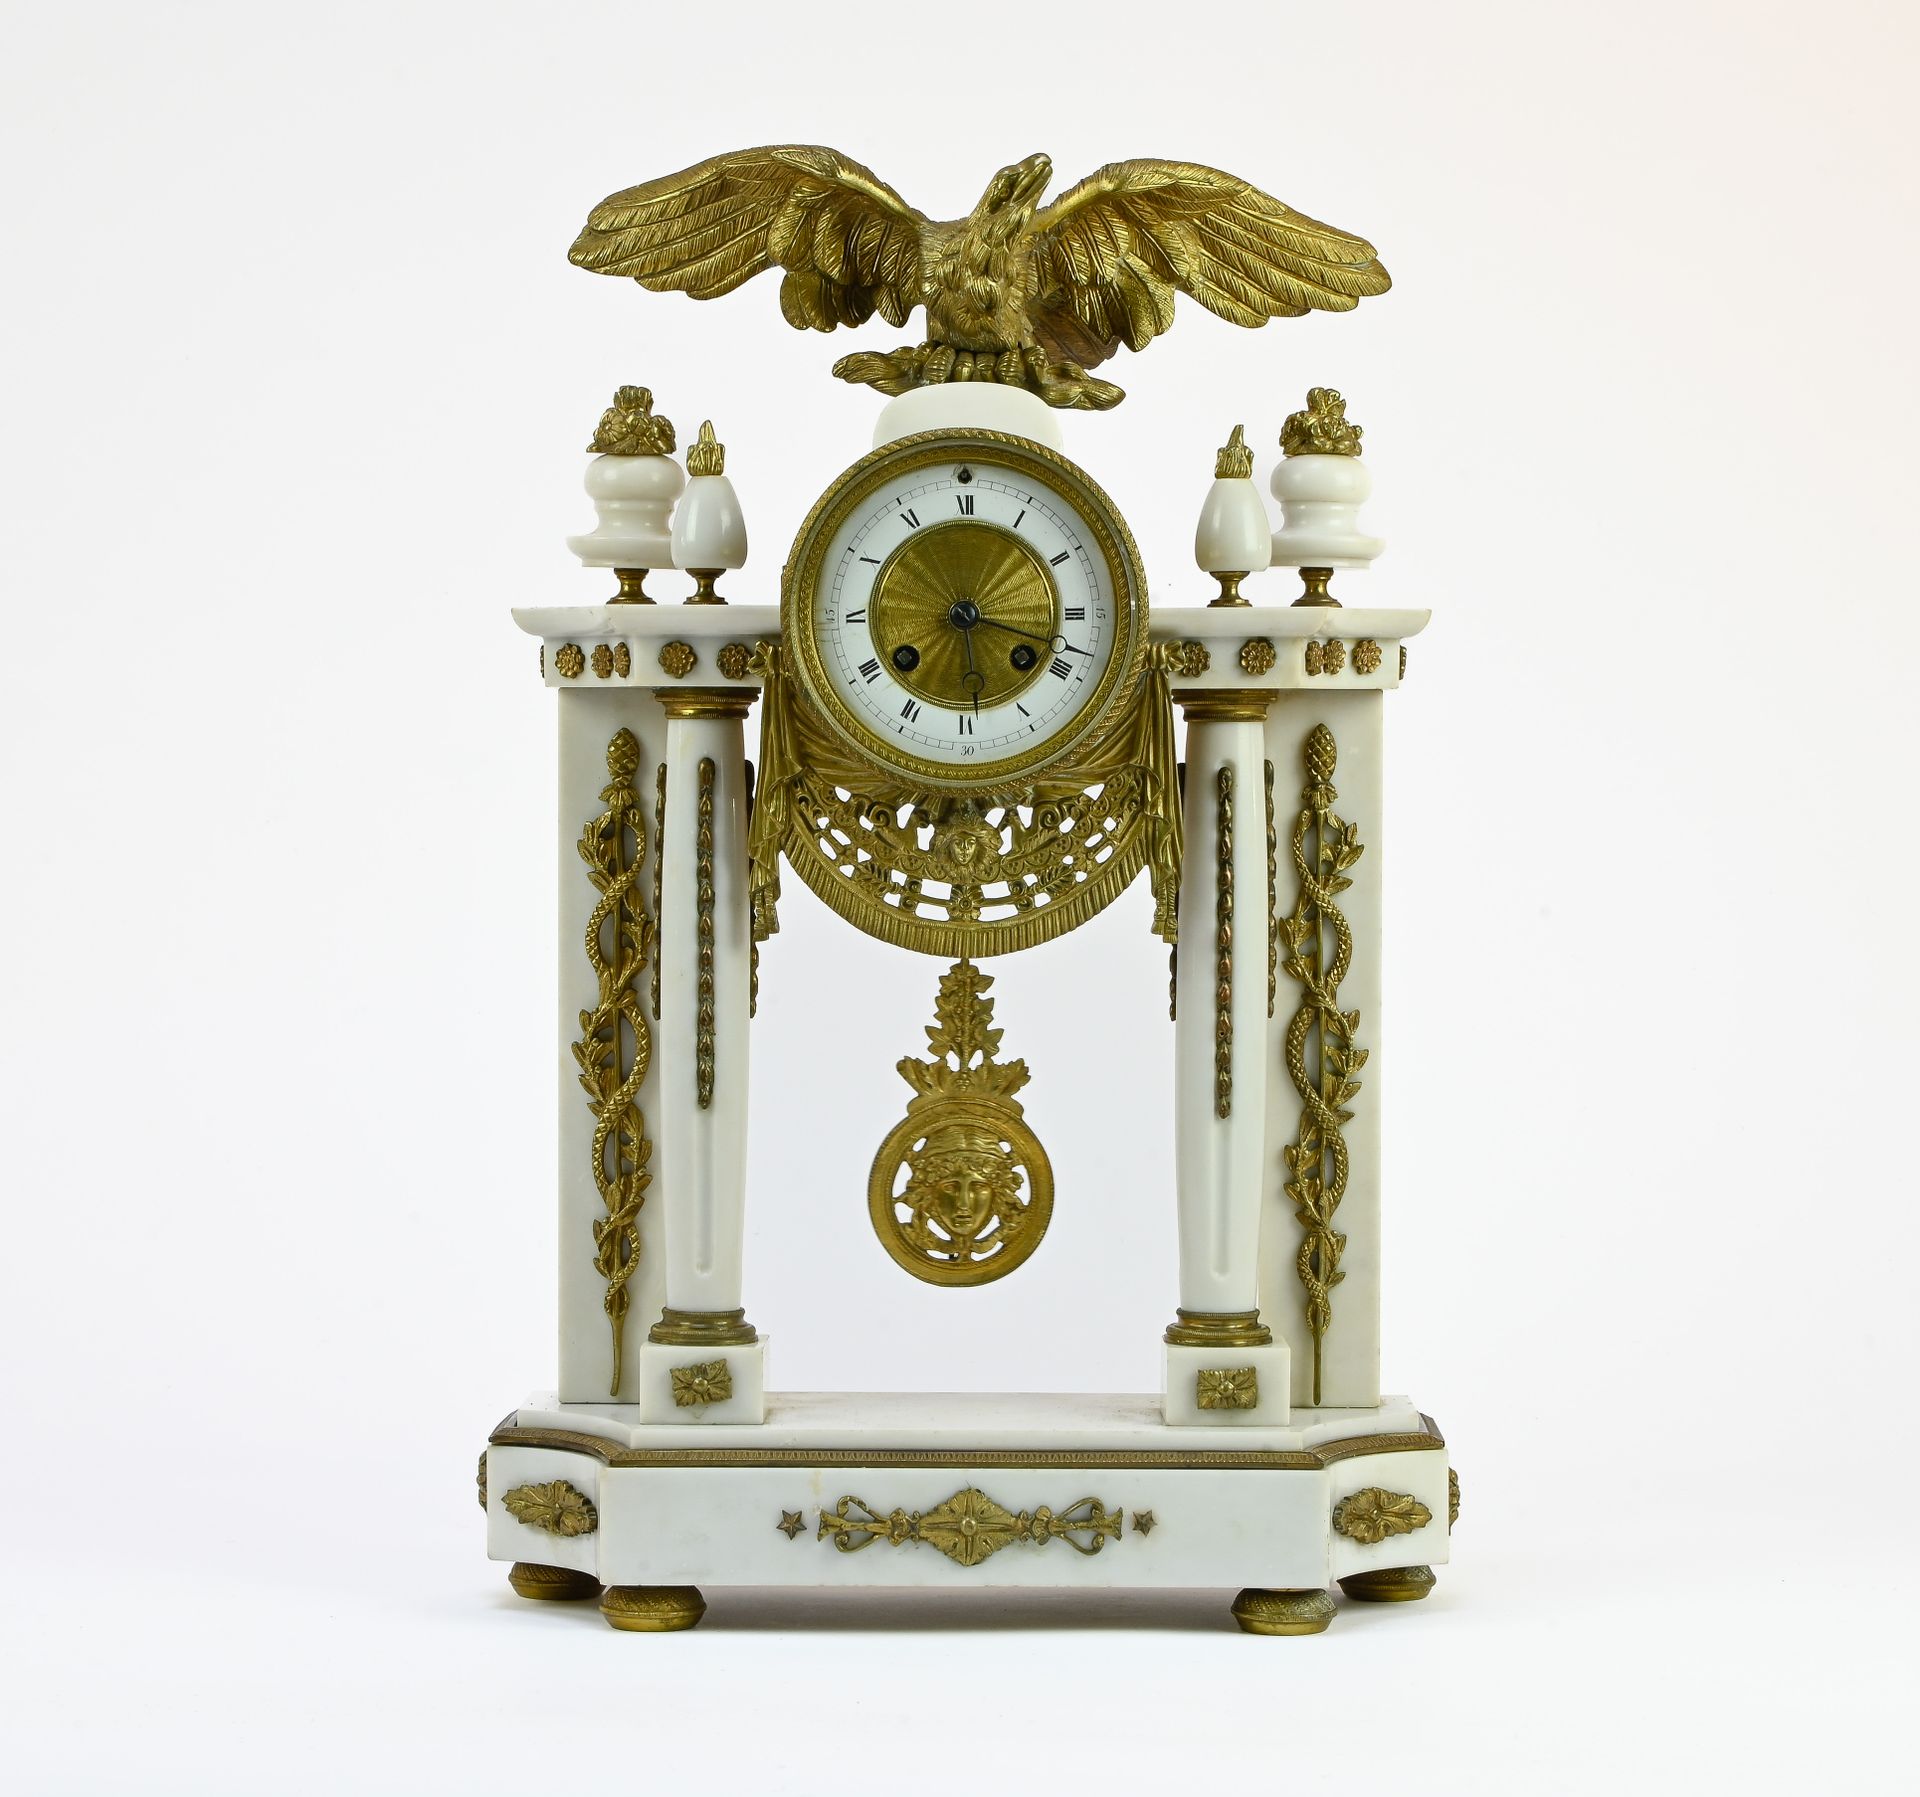 Pendule portique à l'aigle PERIODO LUIGI XIV

Orologio da portico con aquila



&hellip;